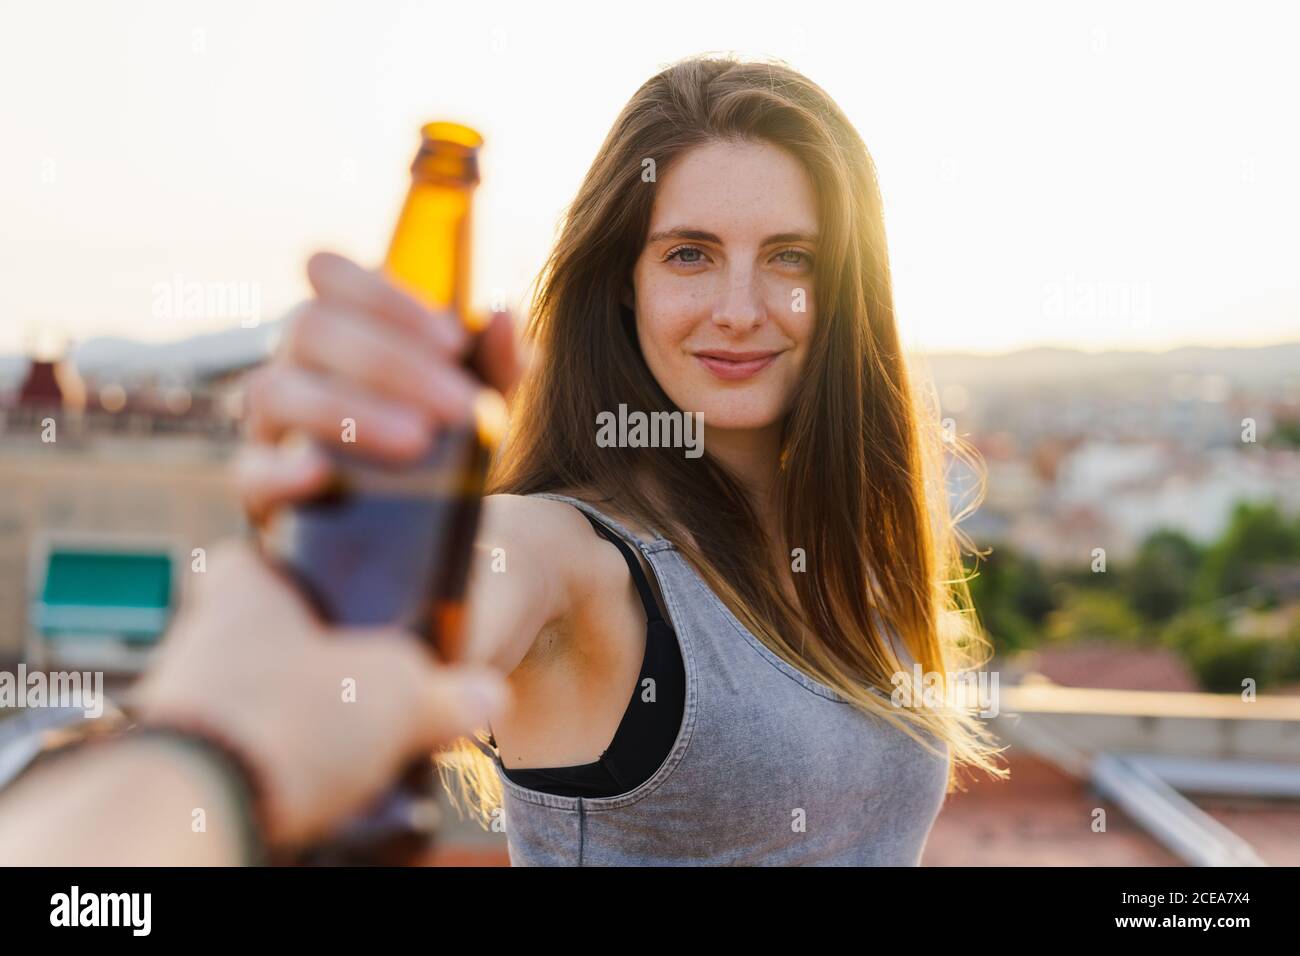 Vista del raccolto della mano che dà una bottiglia di birra fresca a. bella giovane donna in piedi sul tetto e guardando la macchina fotografica su sfondo retroilluminato sfocato Foto Stock